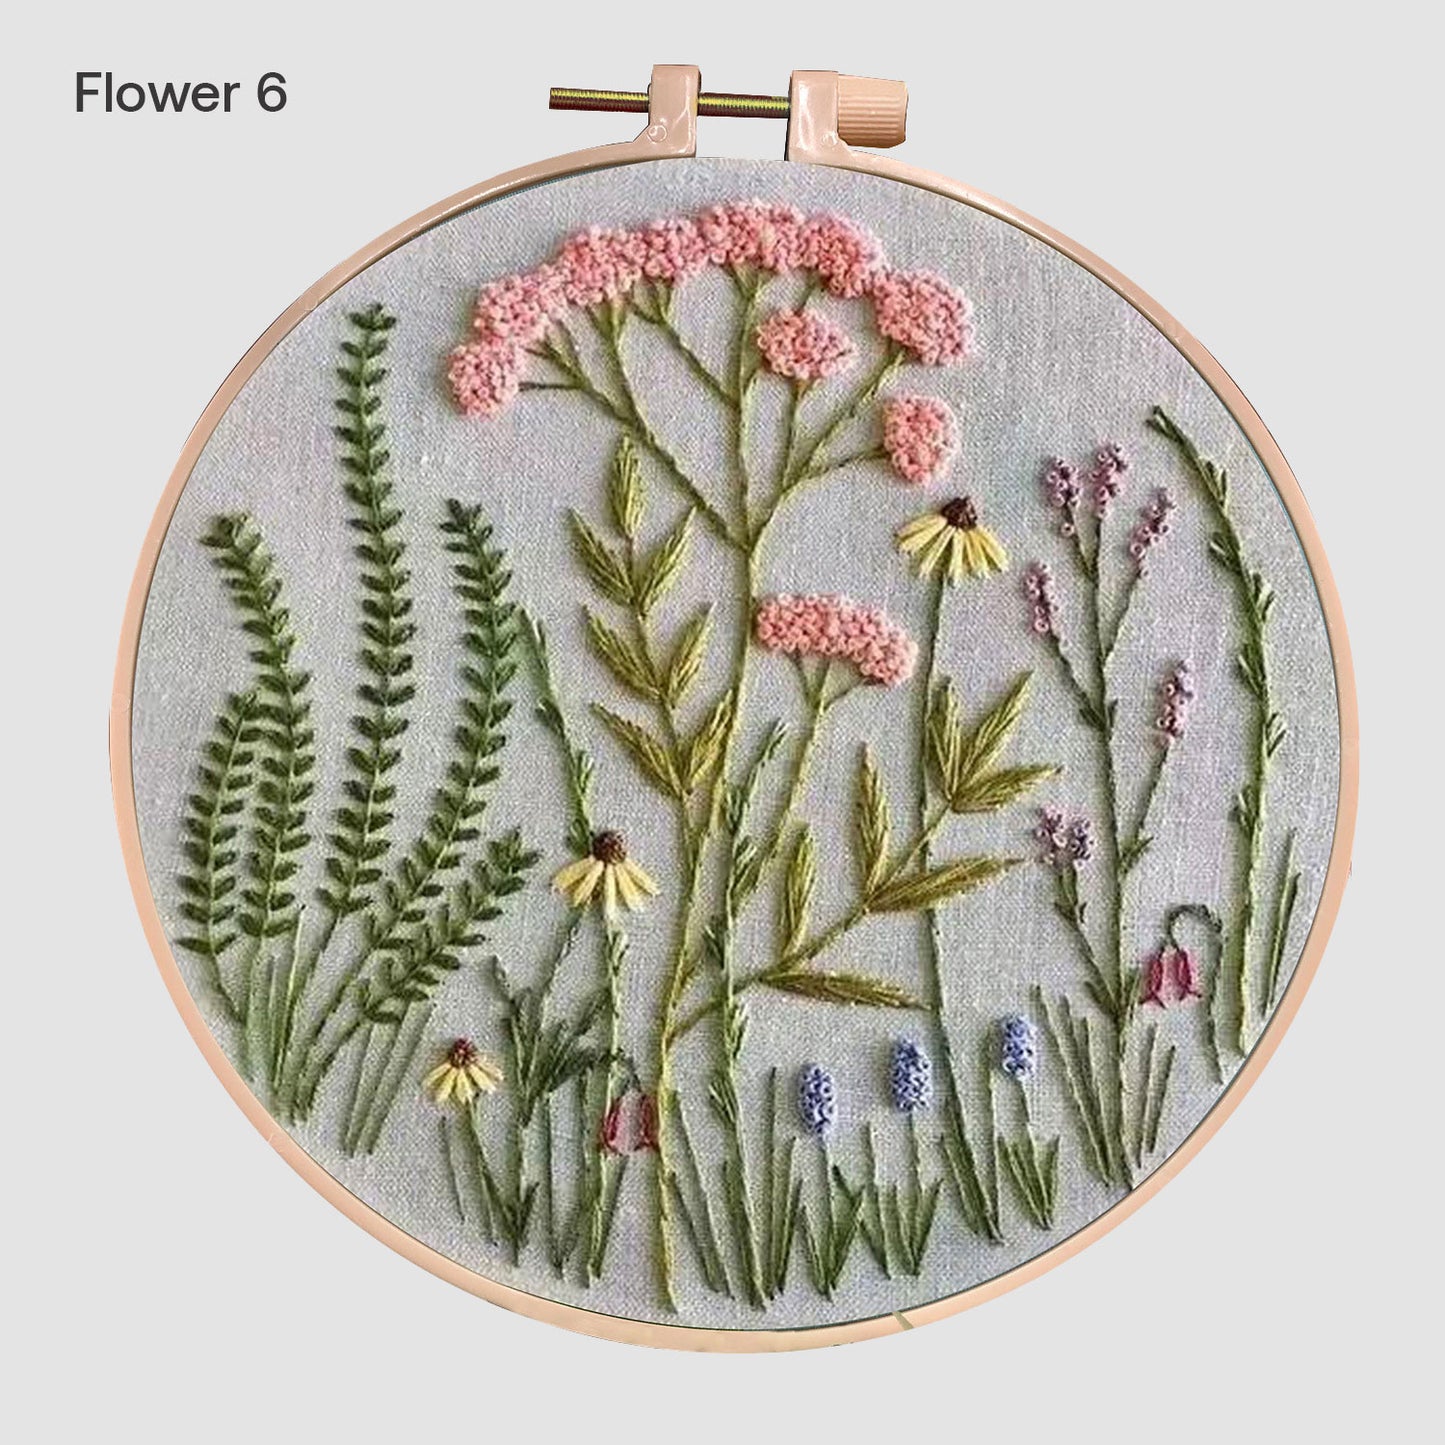 Embroidery Hoop Flower Kit